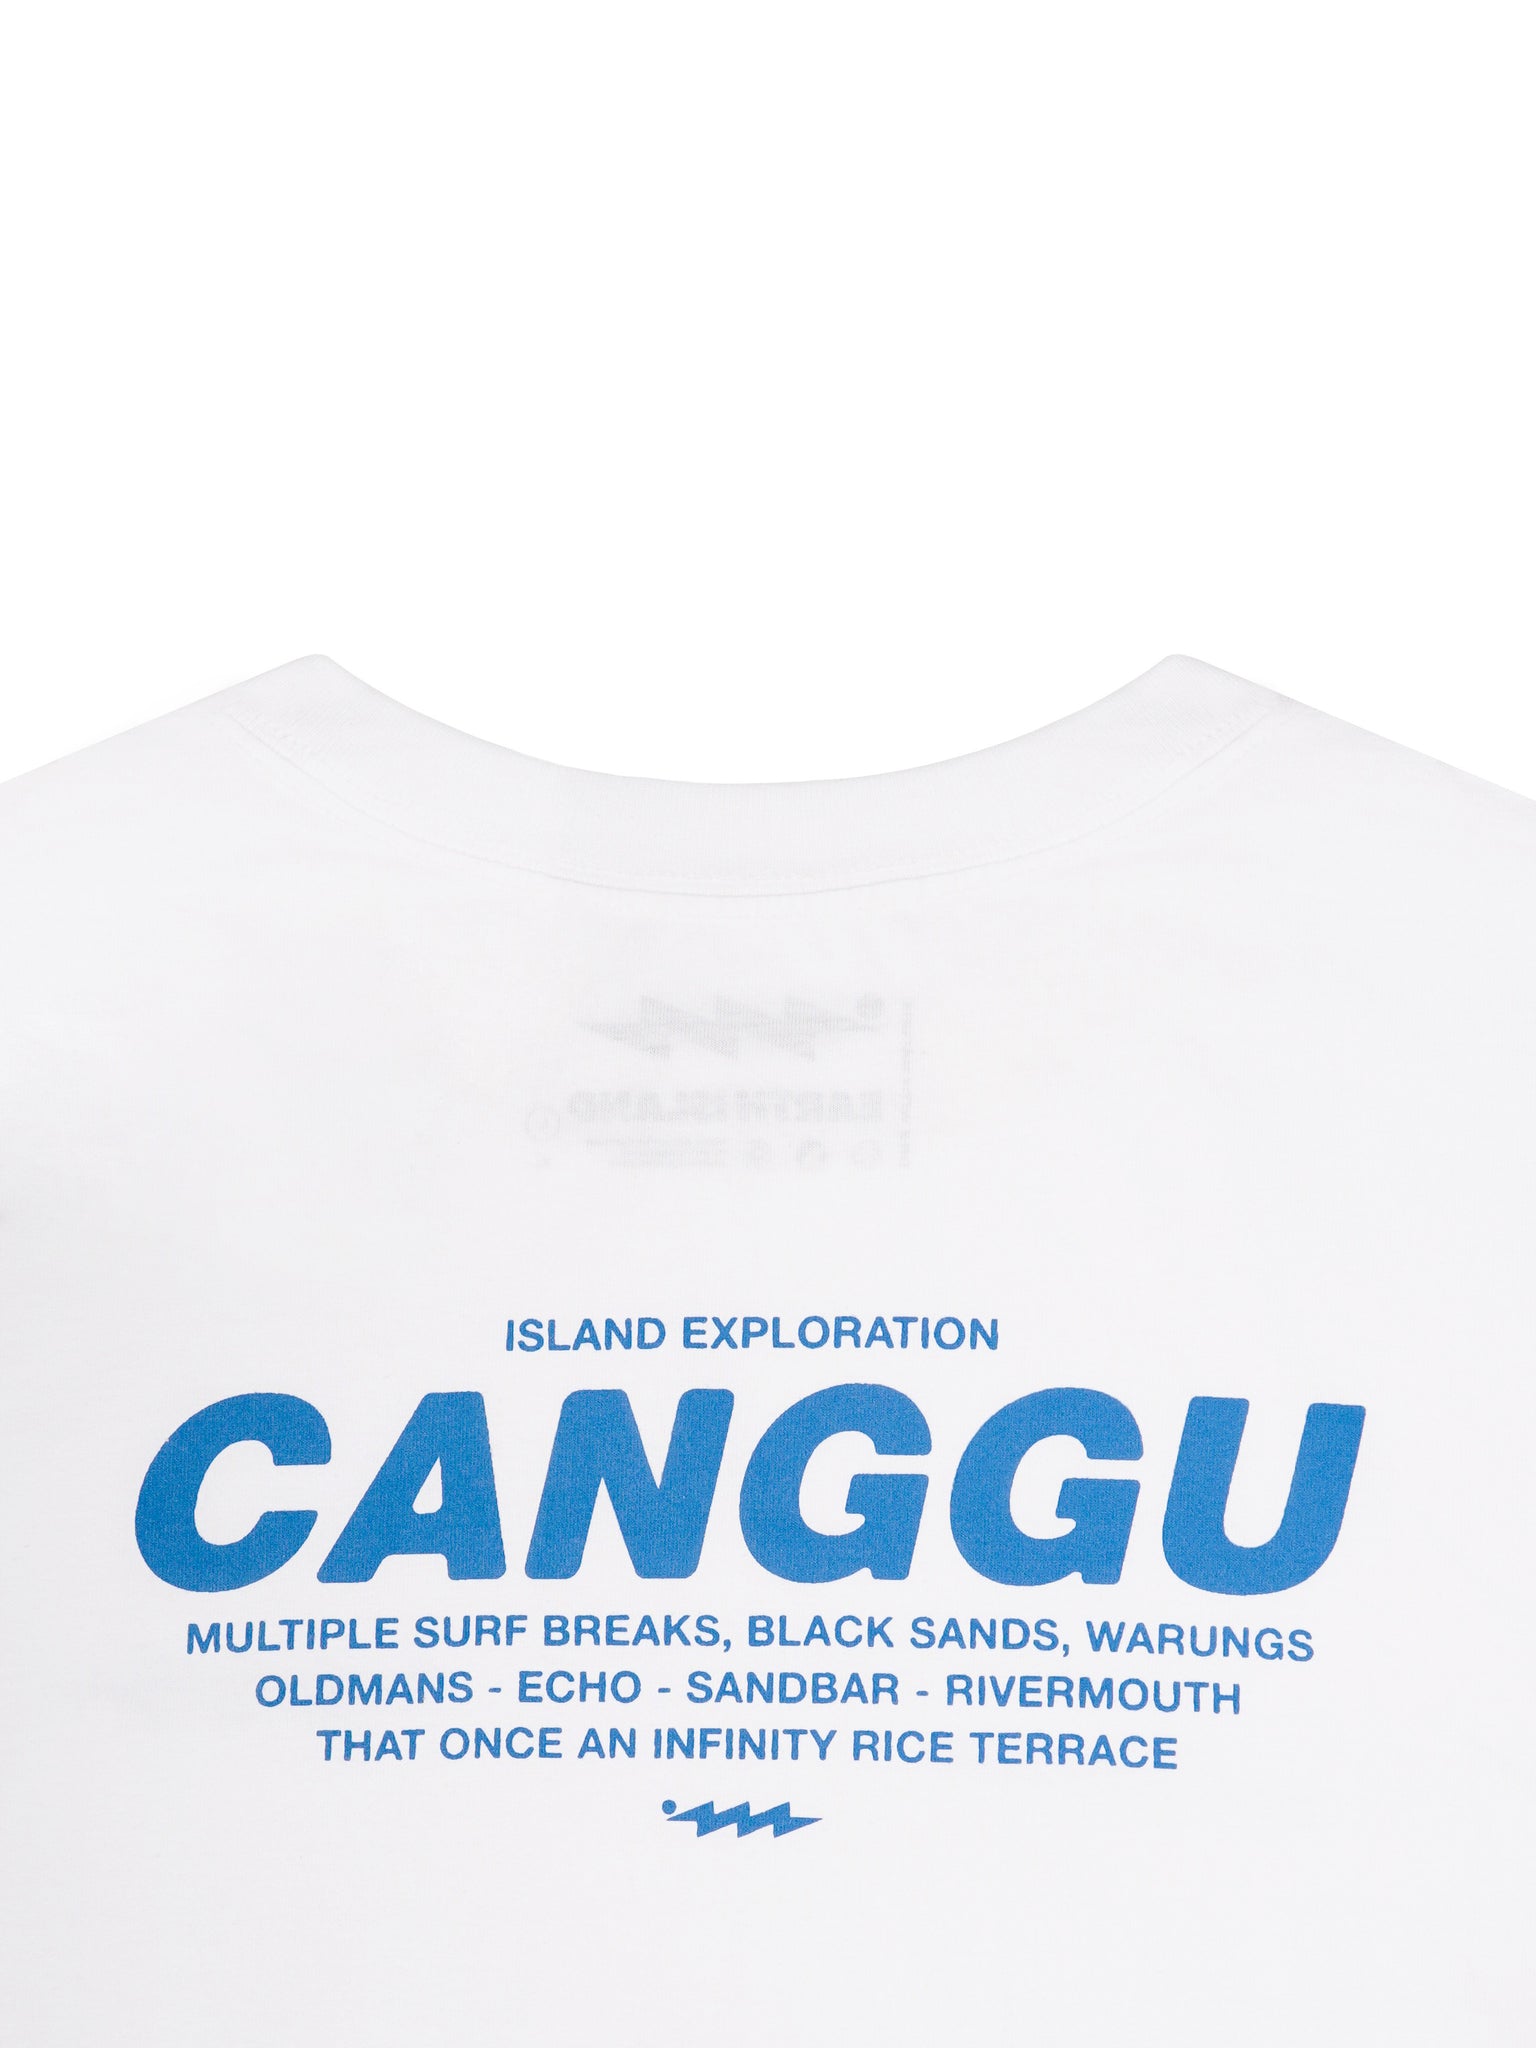 CANGGU WHITE - SHORT SLEEVE